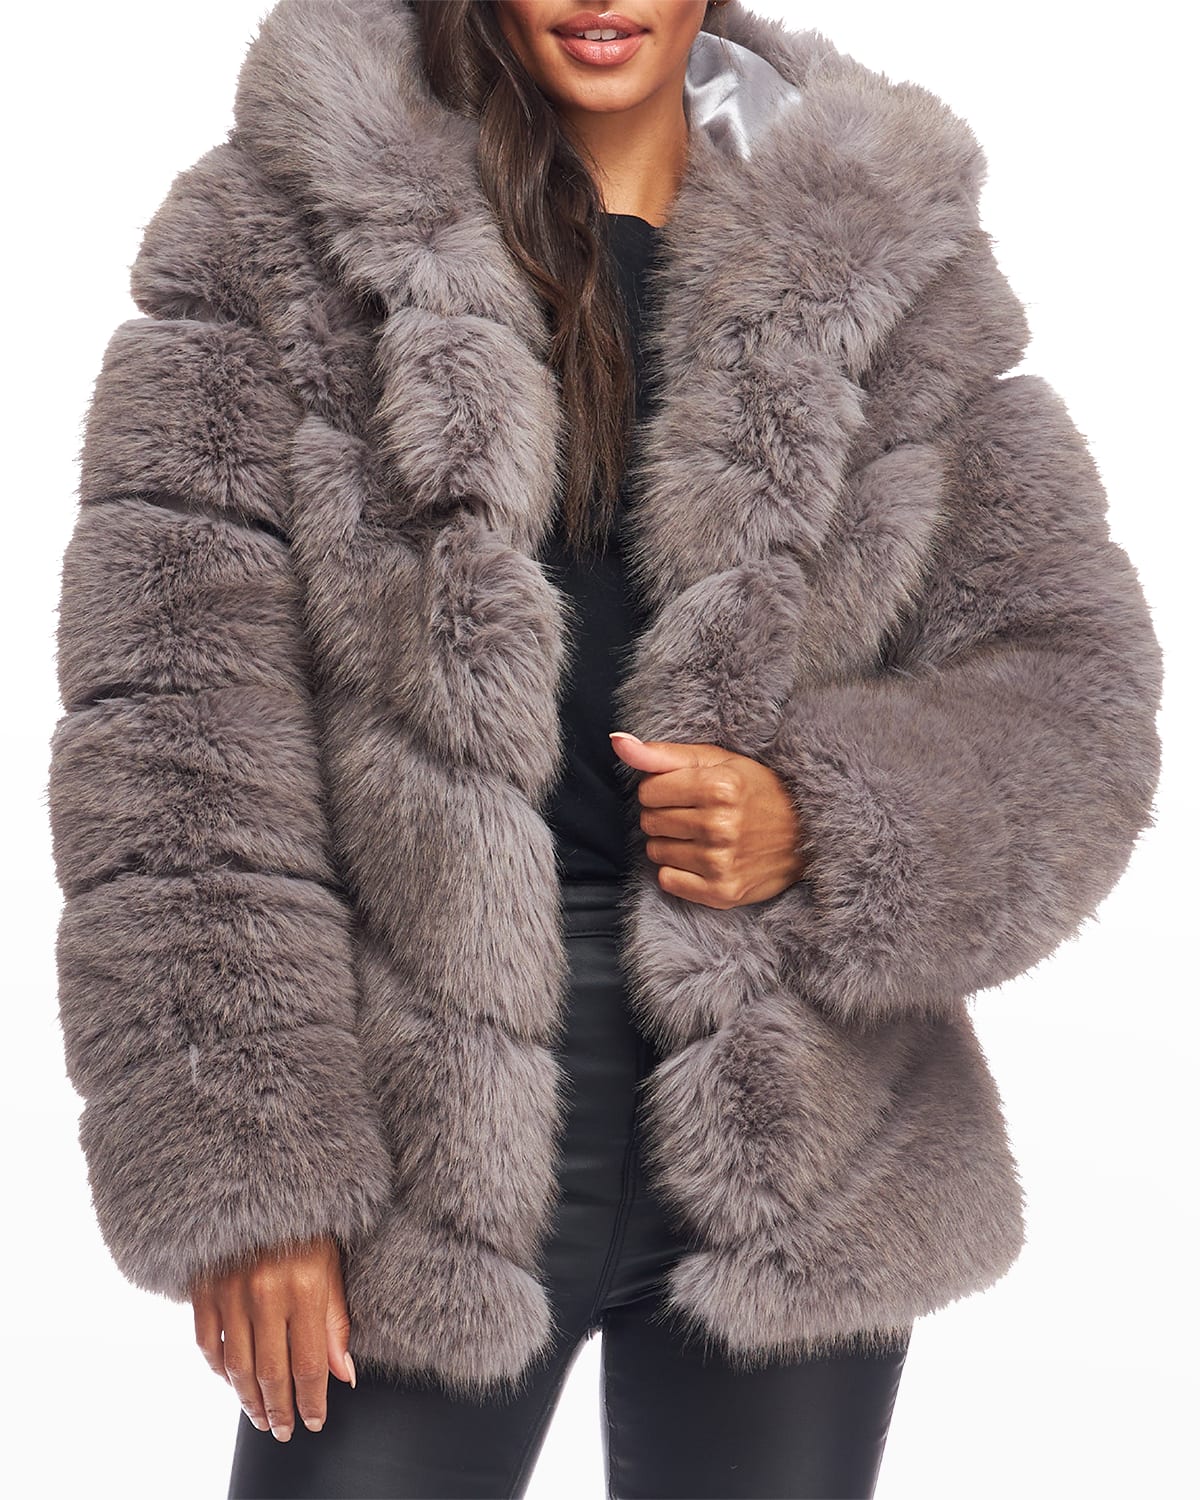 Fabulous Furs Chateau Oversize Chevron Faux Fur Coat